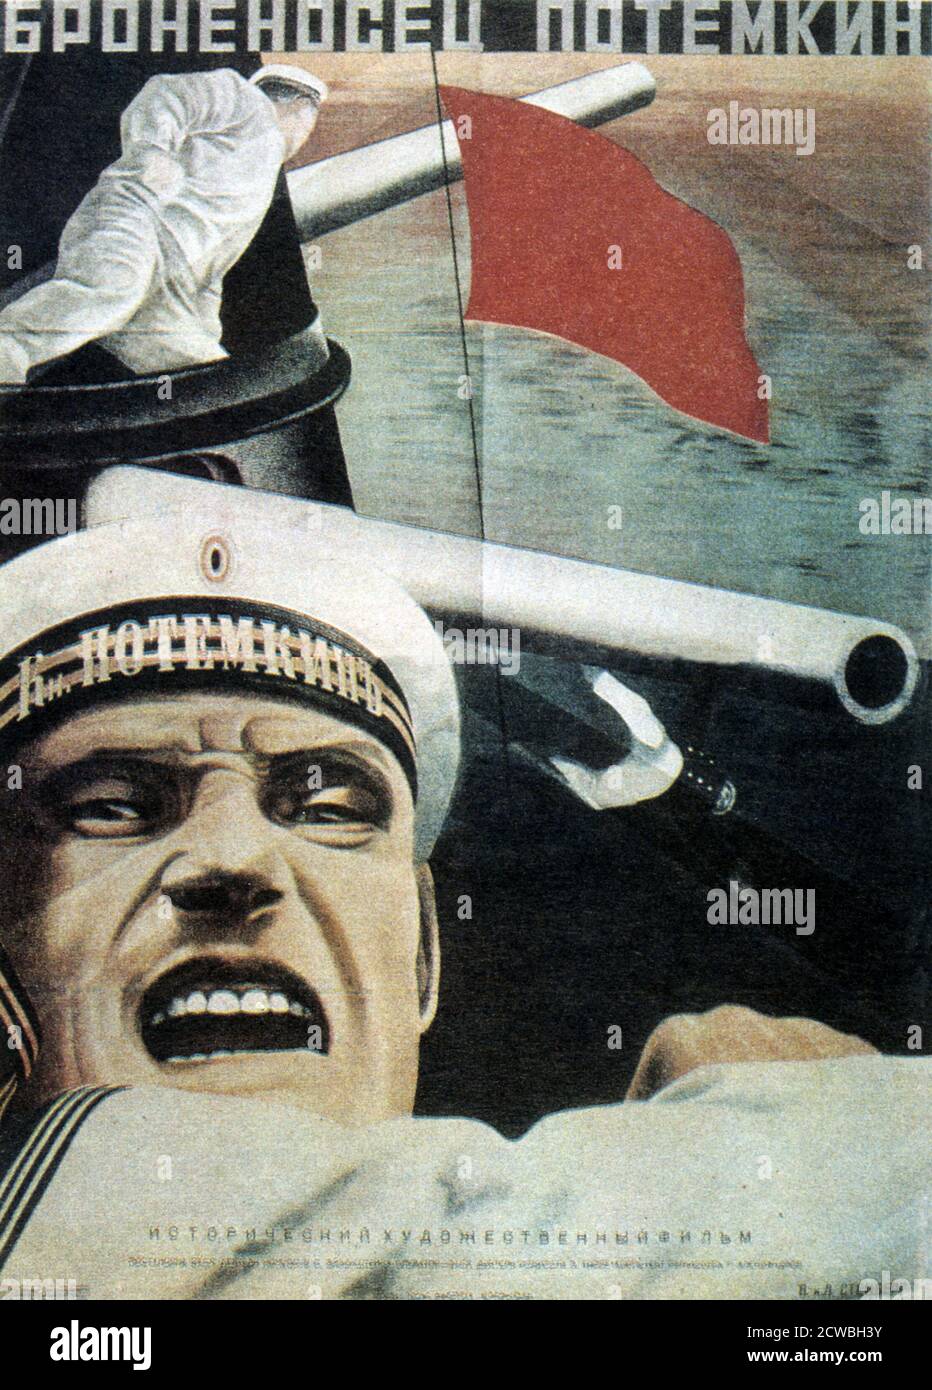 Manifesto di propaganda sovietica russa per 'la corazzata Potemkin' un film silente sovietico del 1925 diretto da Sergei Eisenstein e prodotto da Mosfilm. Presenta una versione drammatizzata del mutinismo che si è verificato nel 1905 quando l'equipaggio della corazzata russa Potemkin si ribellò contro i suoi ufficiali. Foto Stock